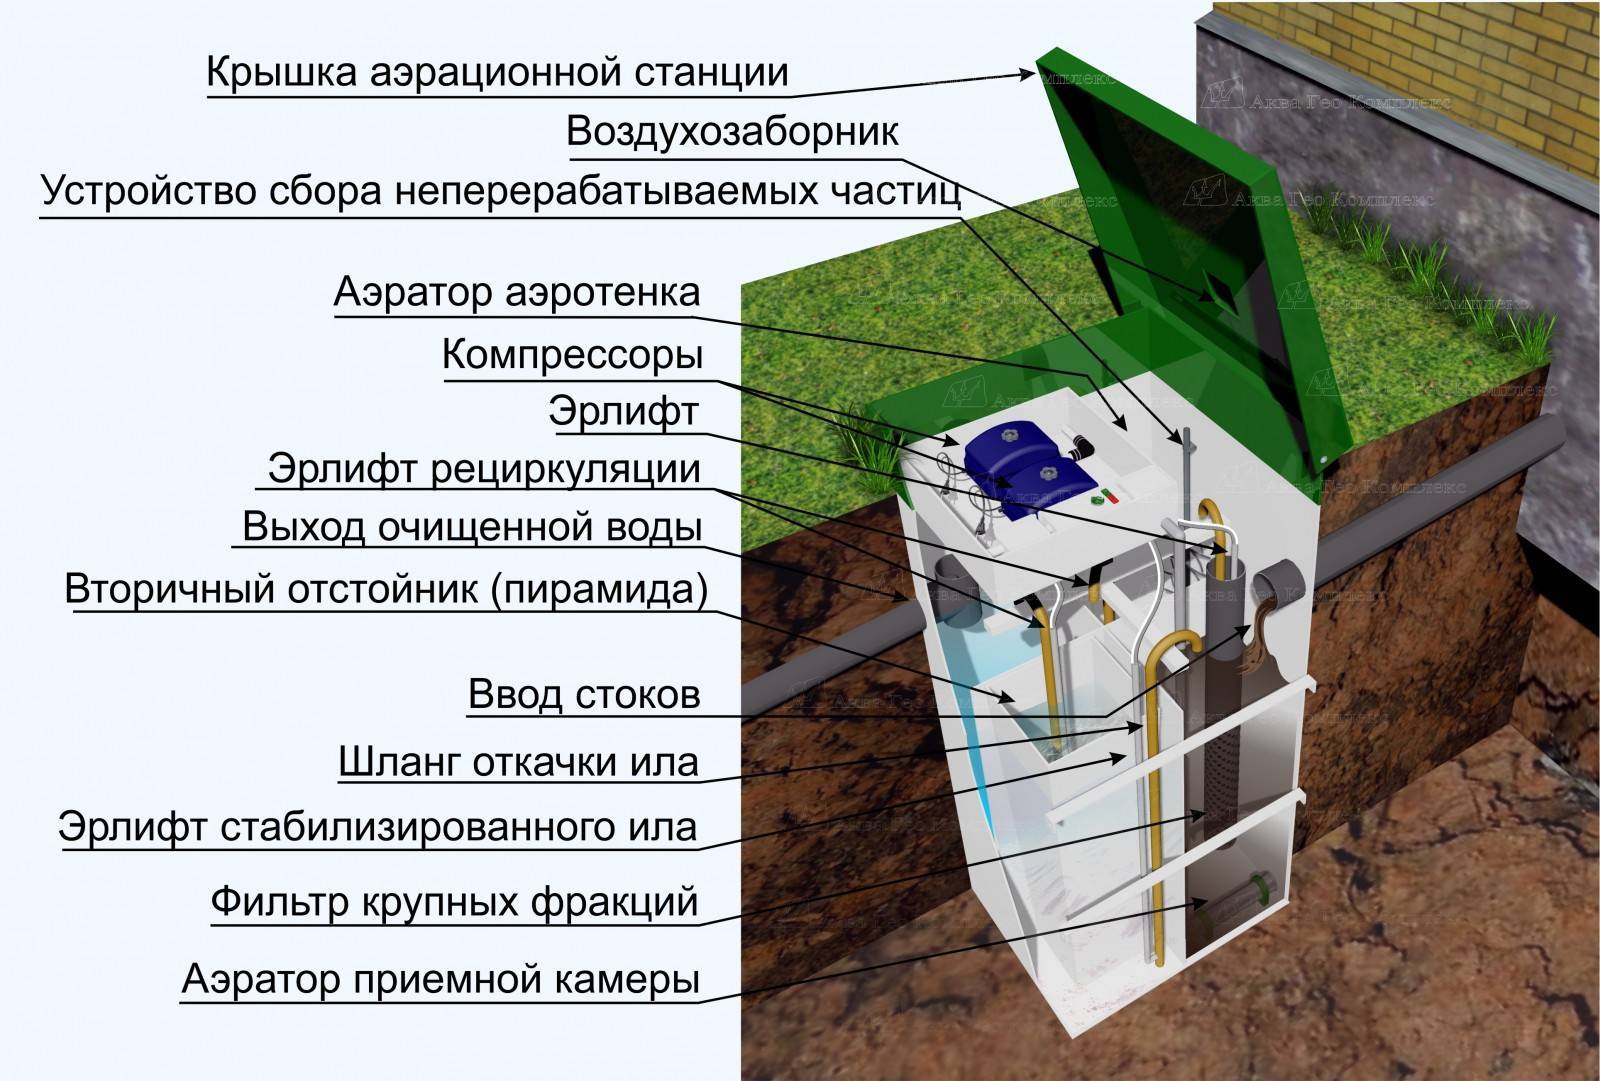 Когда лучше делать септик? - начинаем строить дом, планируем септик | статья на бизнес-портале elport.ru